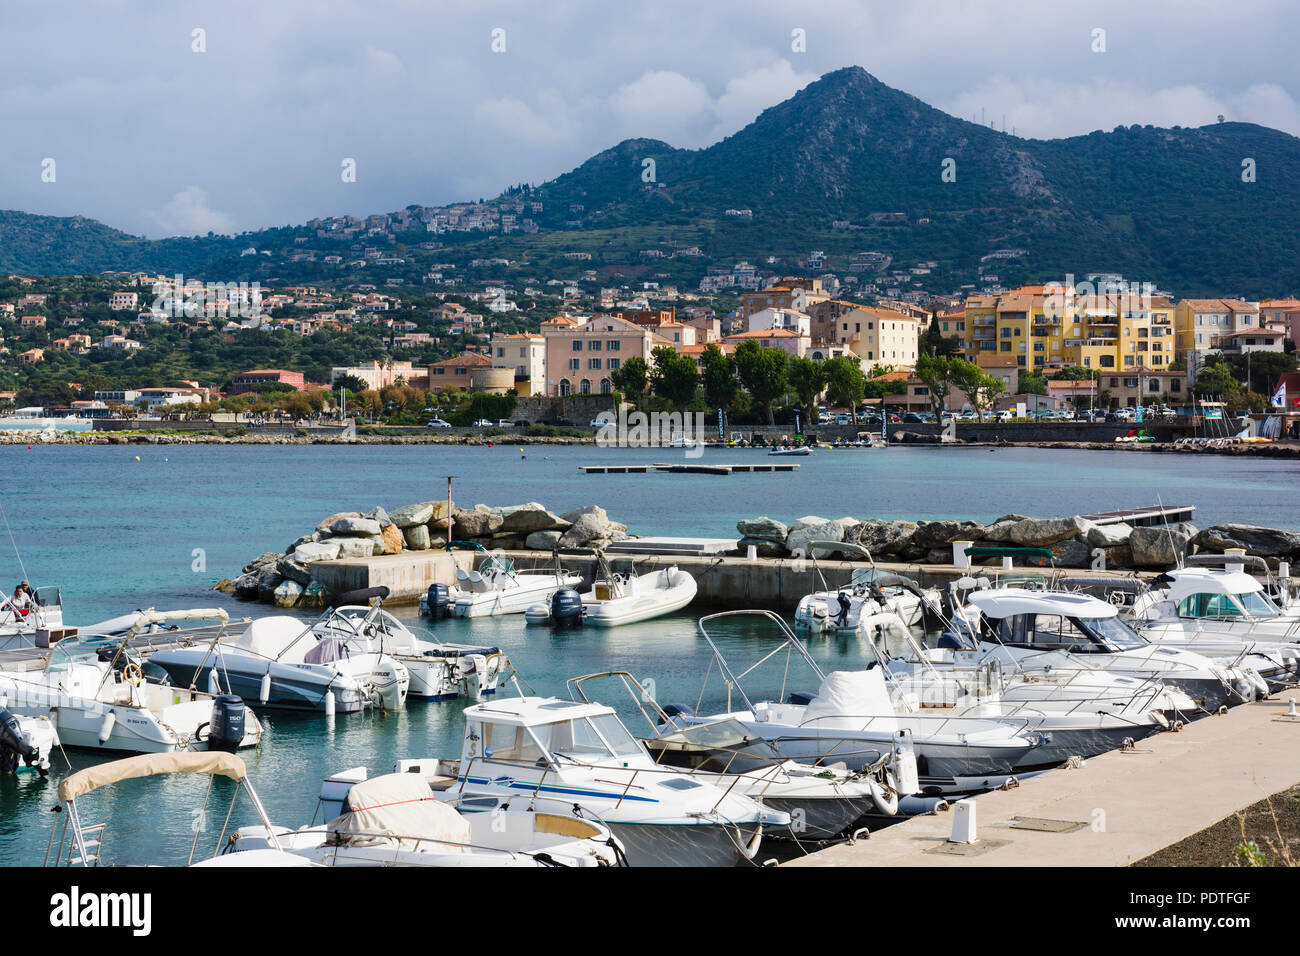 L'Île-Rousse, Corsica, France Stock Photo